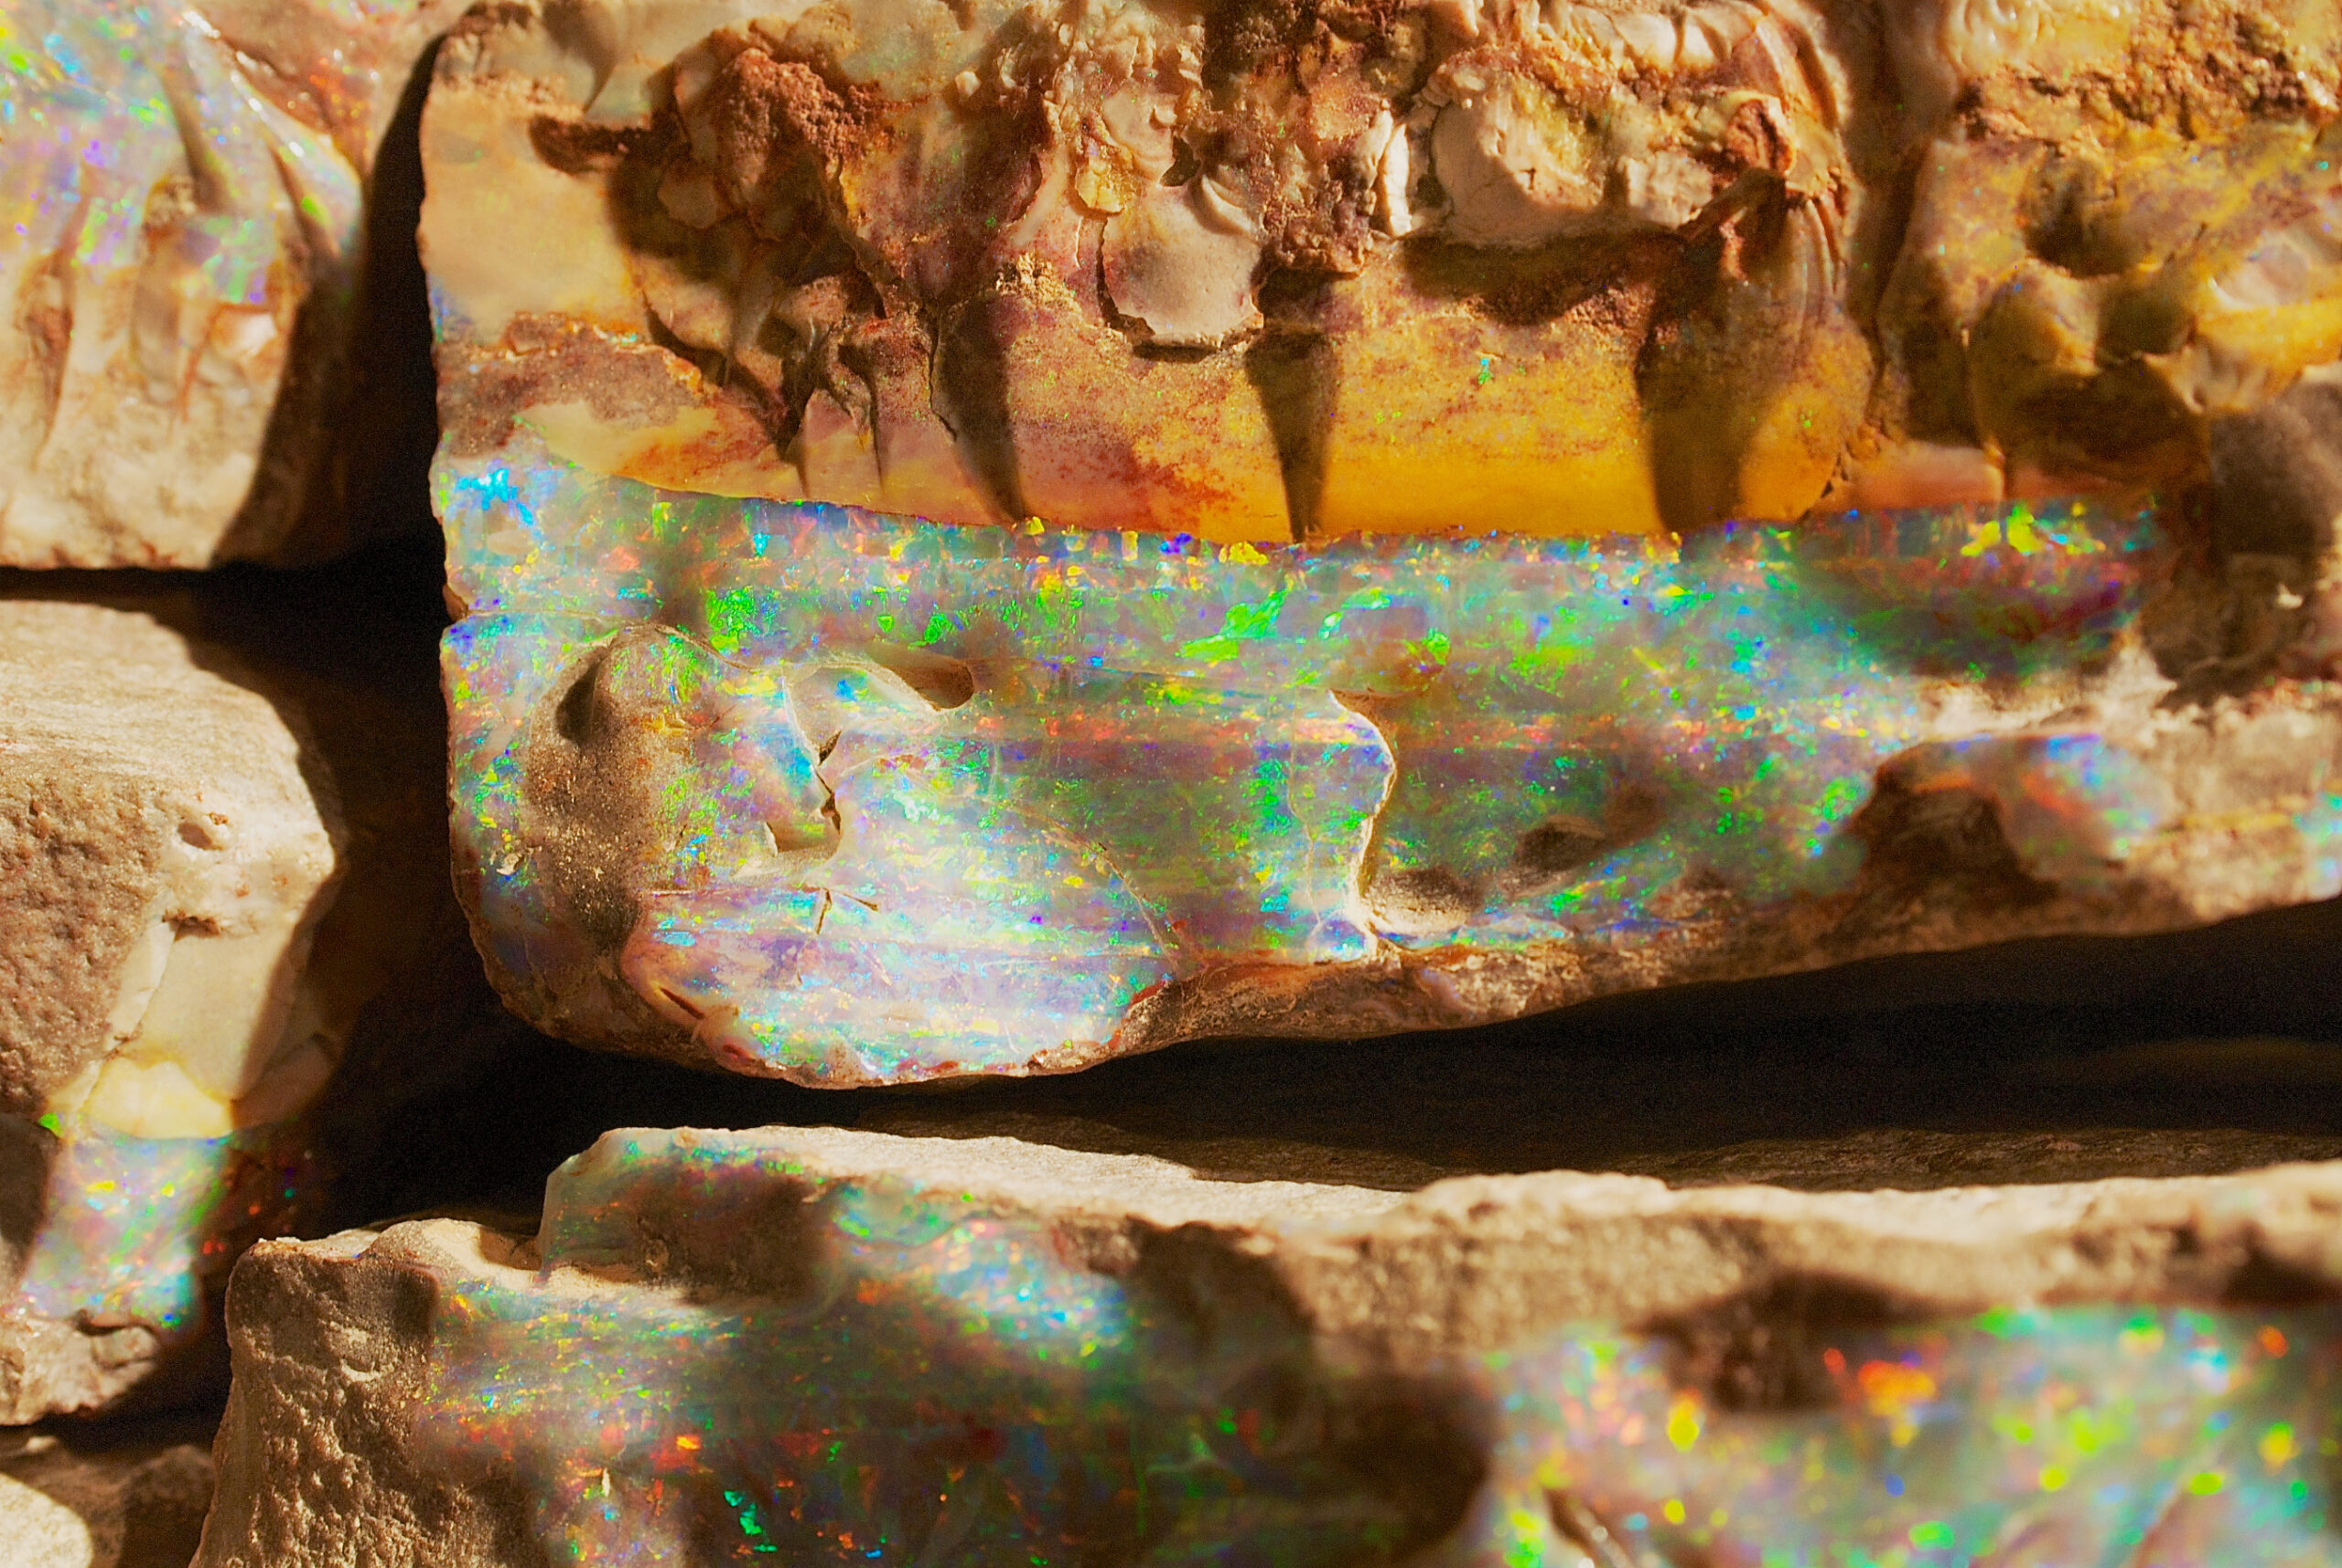 Opal found in rocks